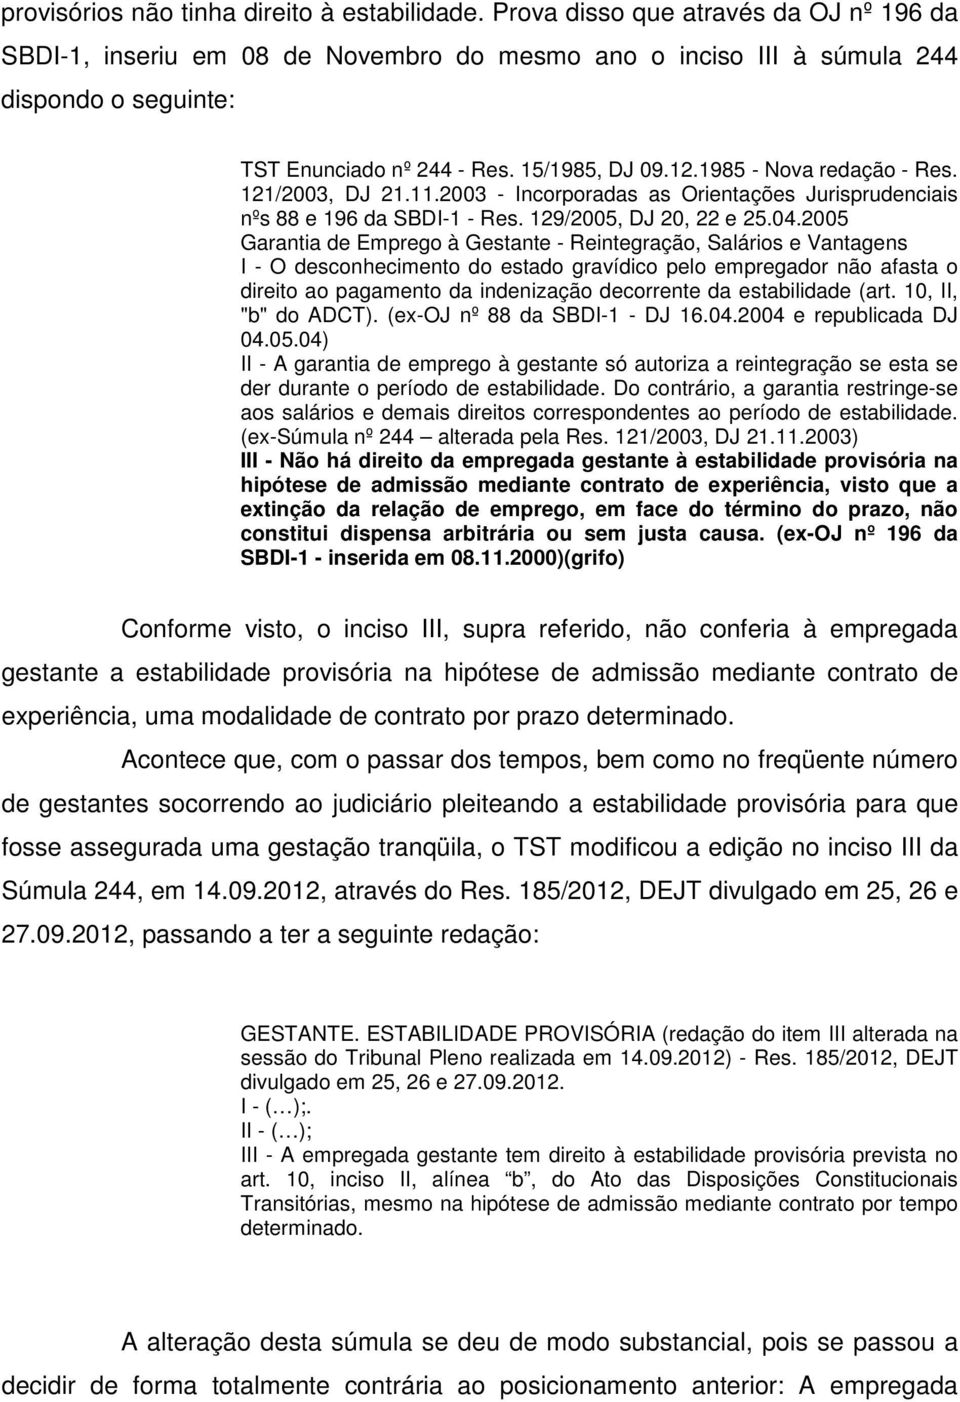 1985 - Nova redação - Res. 121/2003, DJ 21.11.2003 - Incorporadas as Orientações Jurisprudenciais nºs 88 e 196 da SBDI-1 - Res. 129/2005, DJ 20, 22 e 25.04.